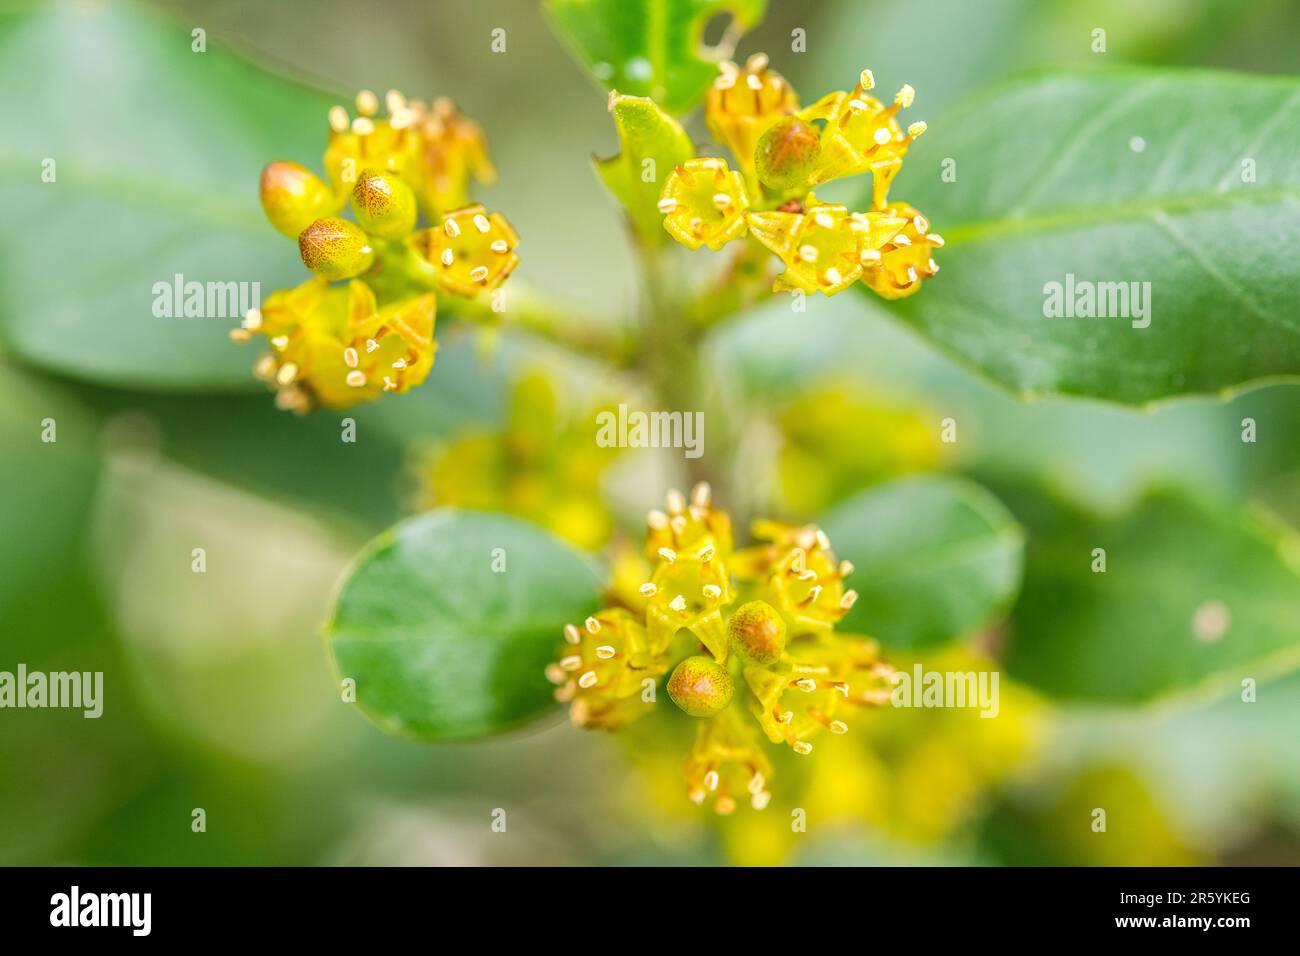 Rhamnus alaternus is a species of flowering plant in the buckthorn family Rhamnaceae, known as Italian buckthorn or Mediterranean buckthorn. Stock Photo